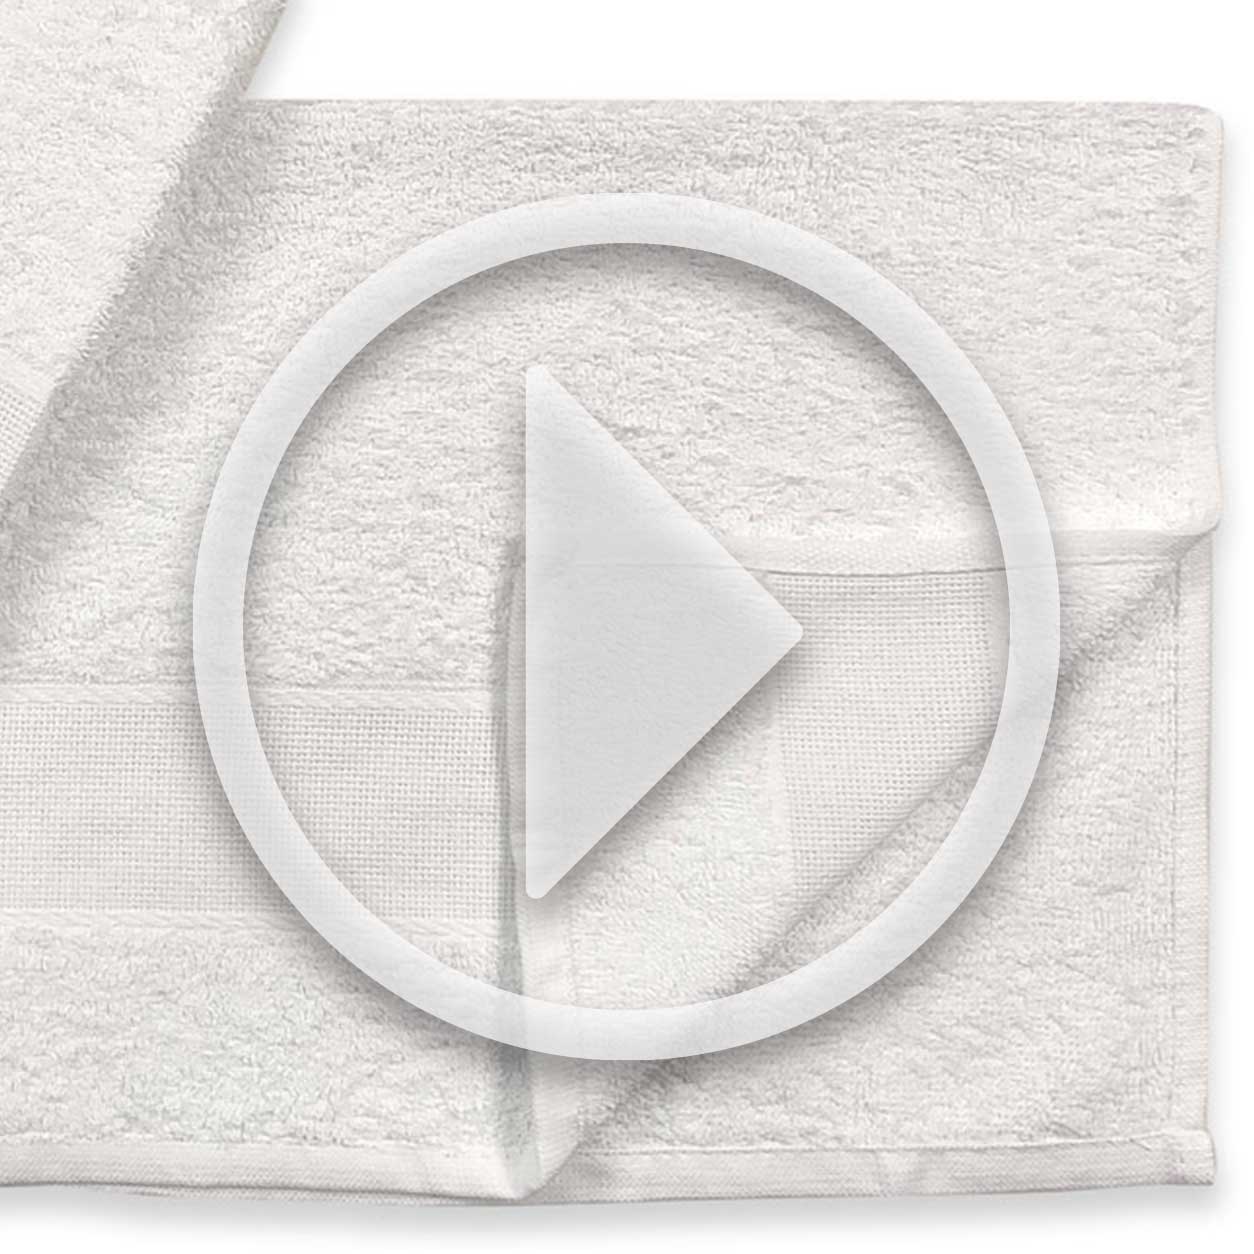 coppiola-di-asciugamani-bianchi-video